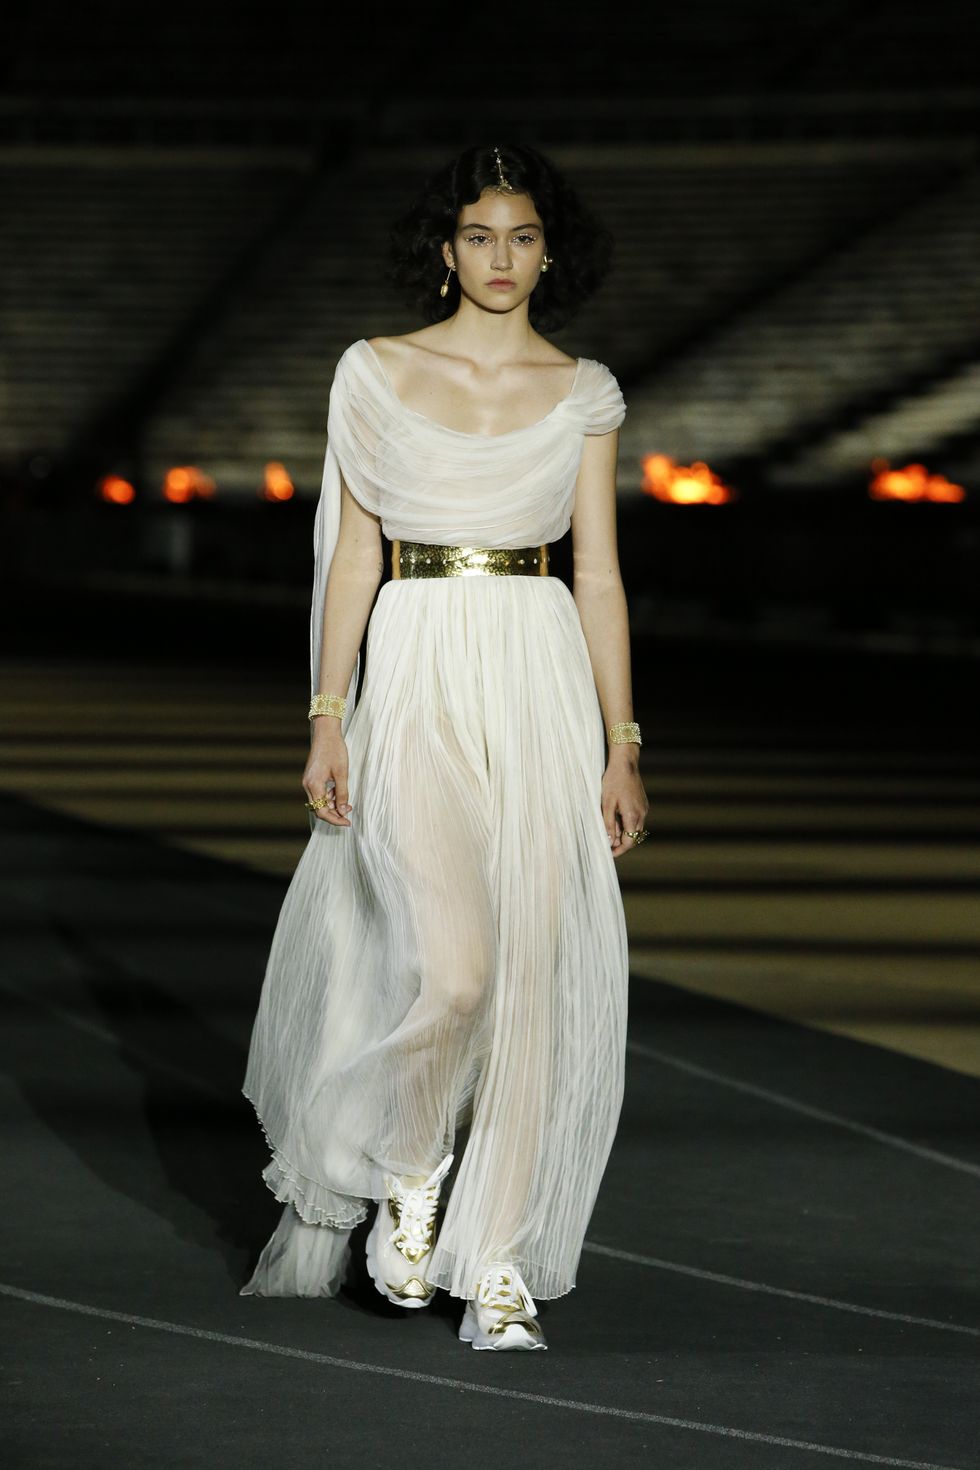 H'Hen Niê hoá “Nữ thần Hy Lạp” trong trang phục của NTK Linh San - Tạp chí  Đẹp | Phong cách thời trang, Trang phục nữ thần hy lạp, Nữ thần